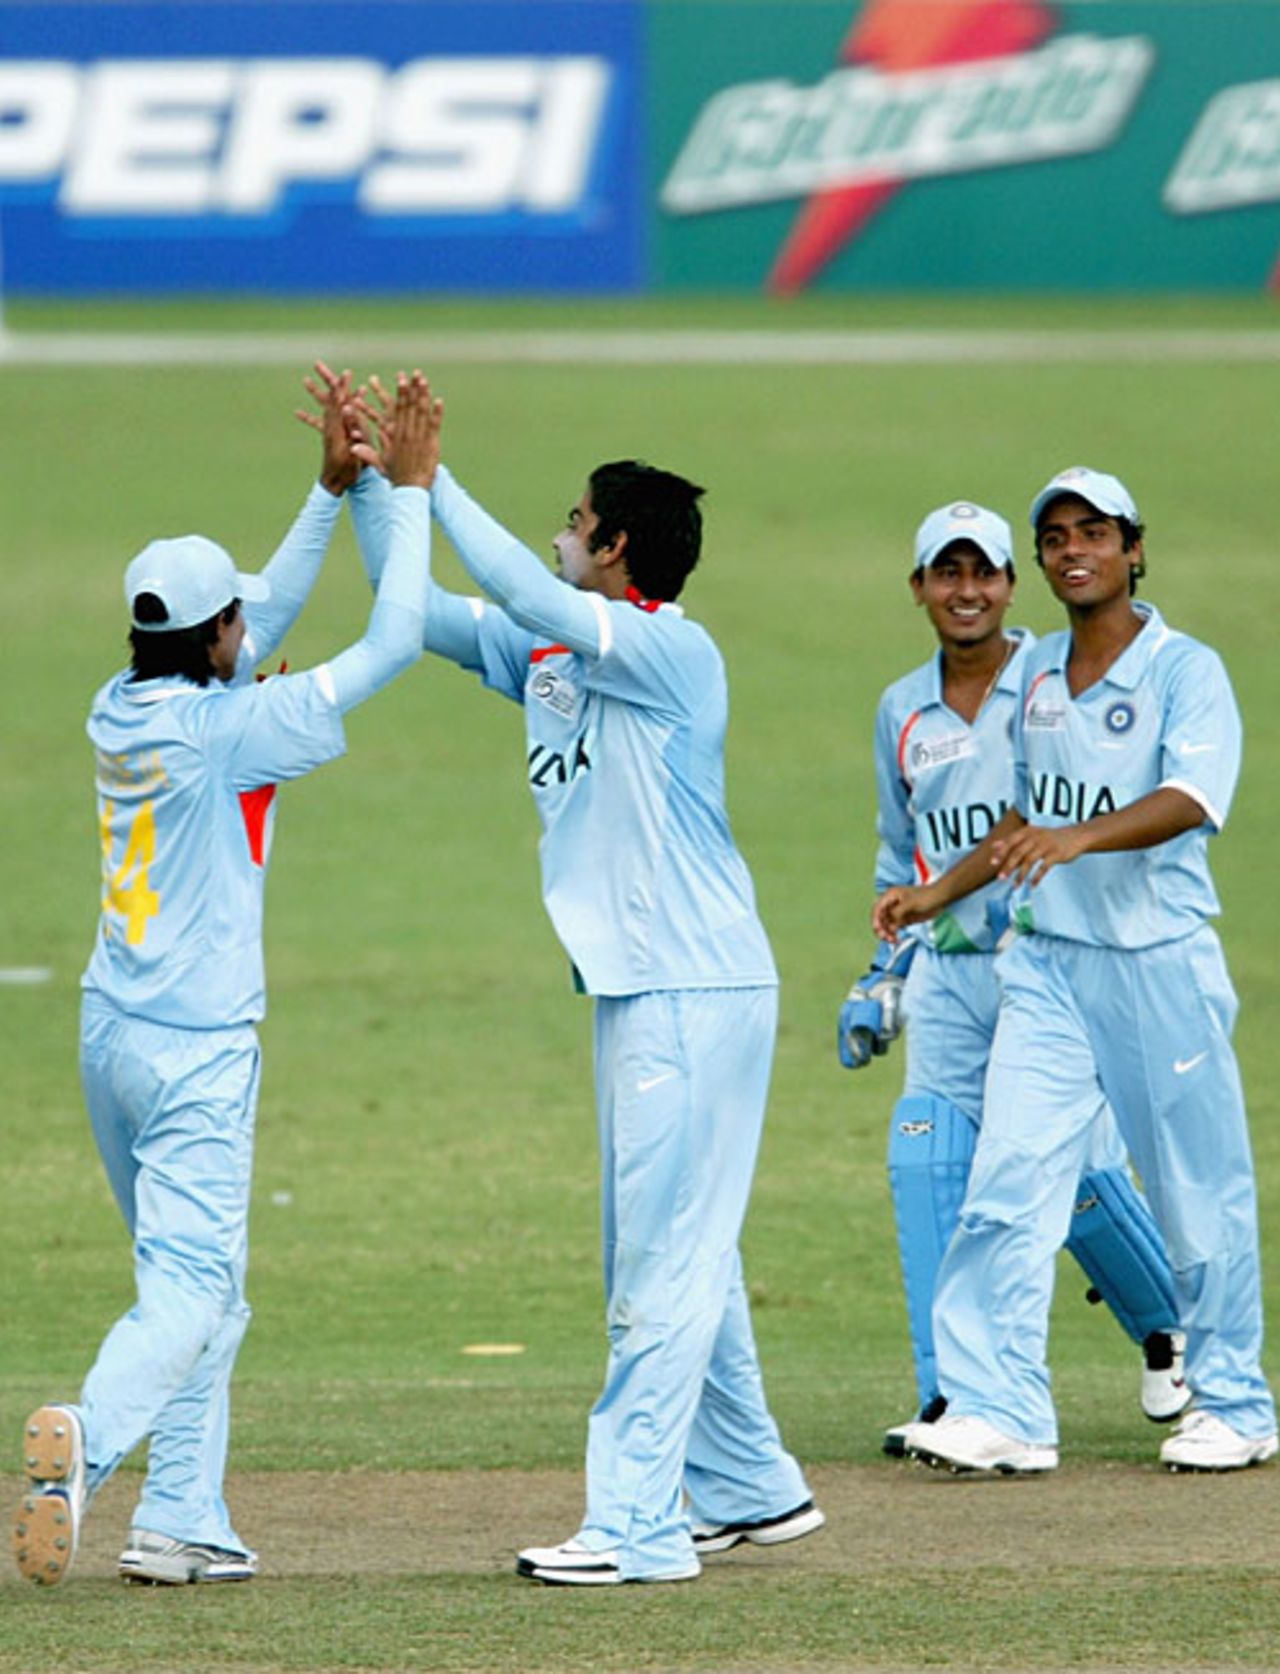 Virat Kohli celebrates after picking up a New Zealand wicket, India U-19 v New Zealand U-19, Under-19 World Cup, Kuala Lumpur, February 27, 2008